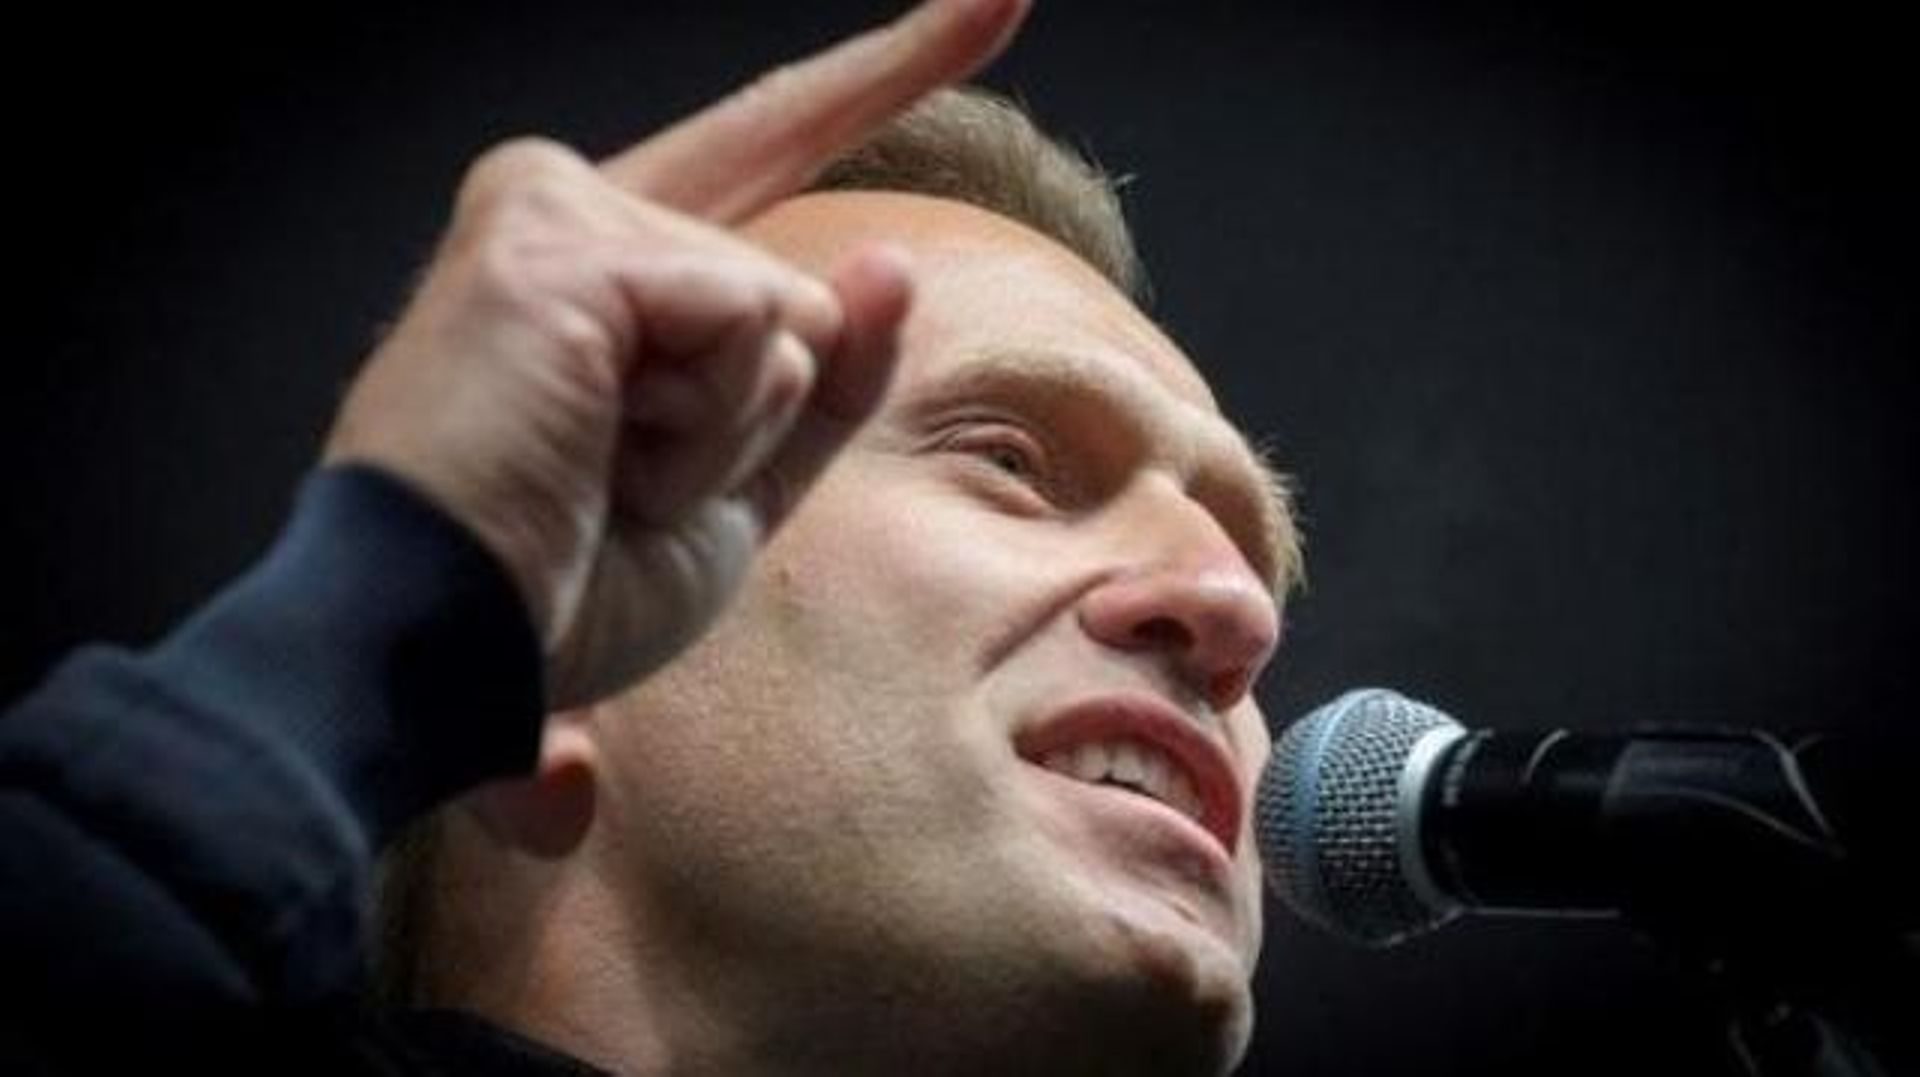 Russie: l'opposant Navalny condamné à payer 1,2 million d'euros pour "diffamation"